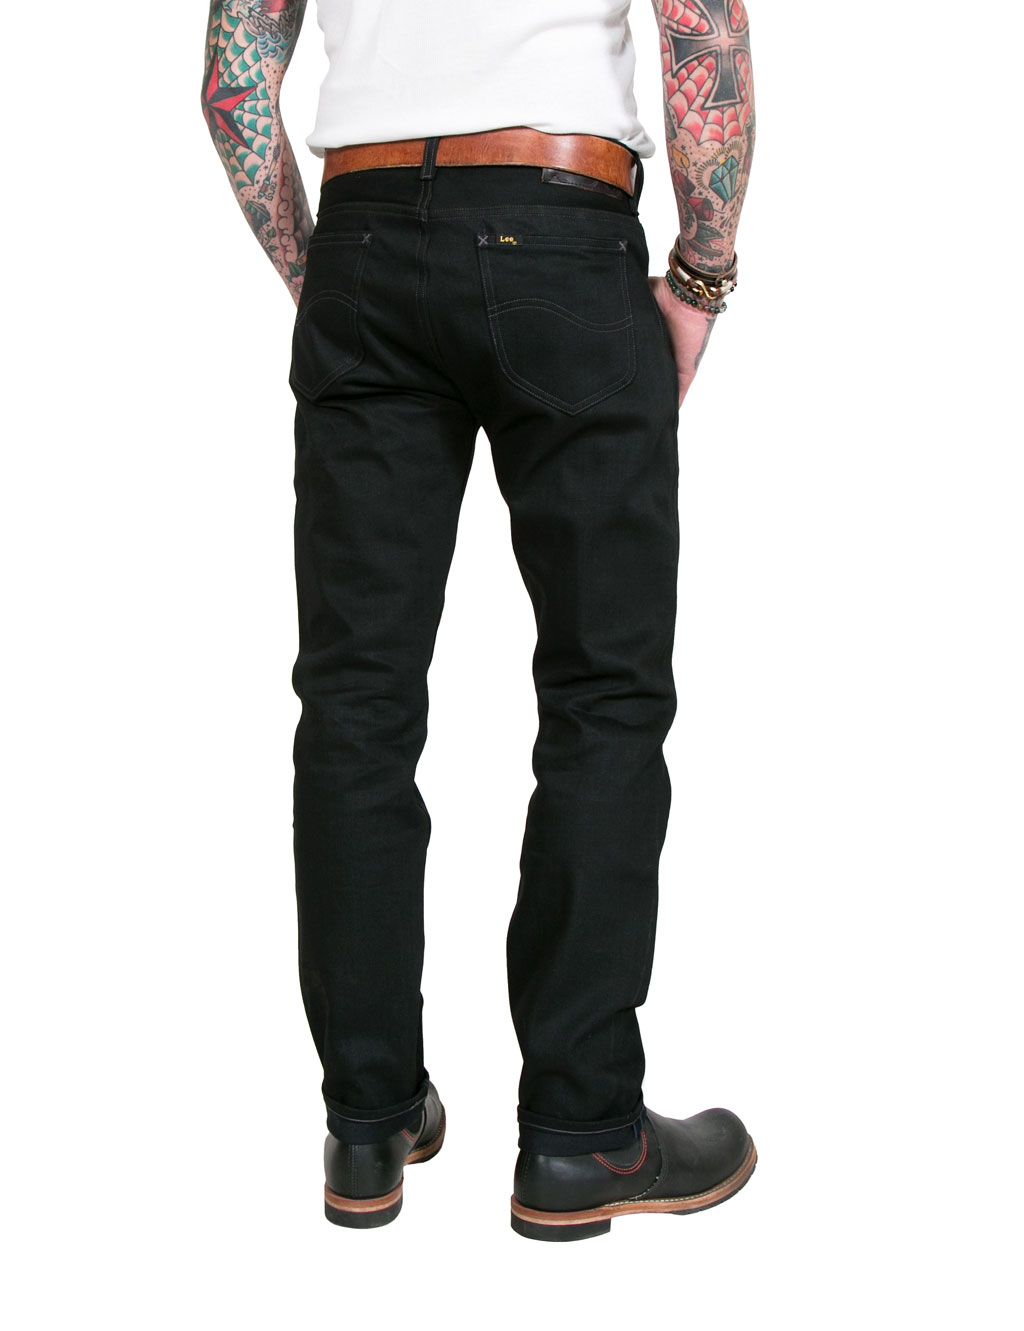 Lee - 101 Rider Slim Fit Jeans Dry Black - 13oz